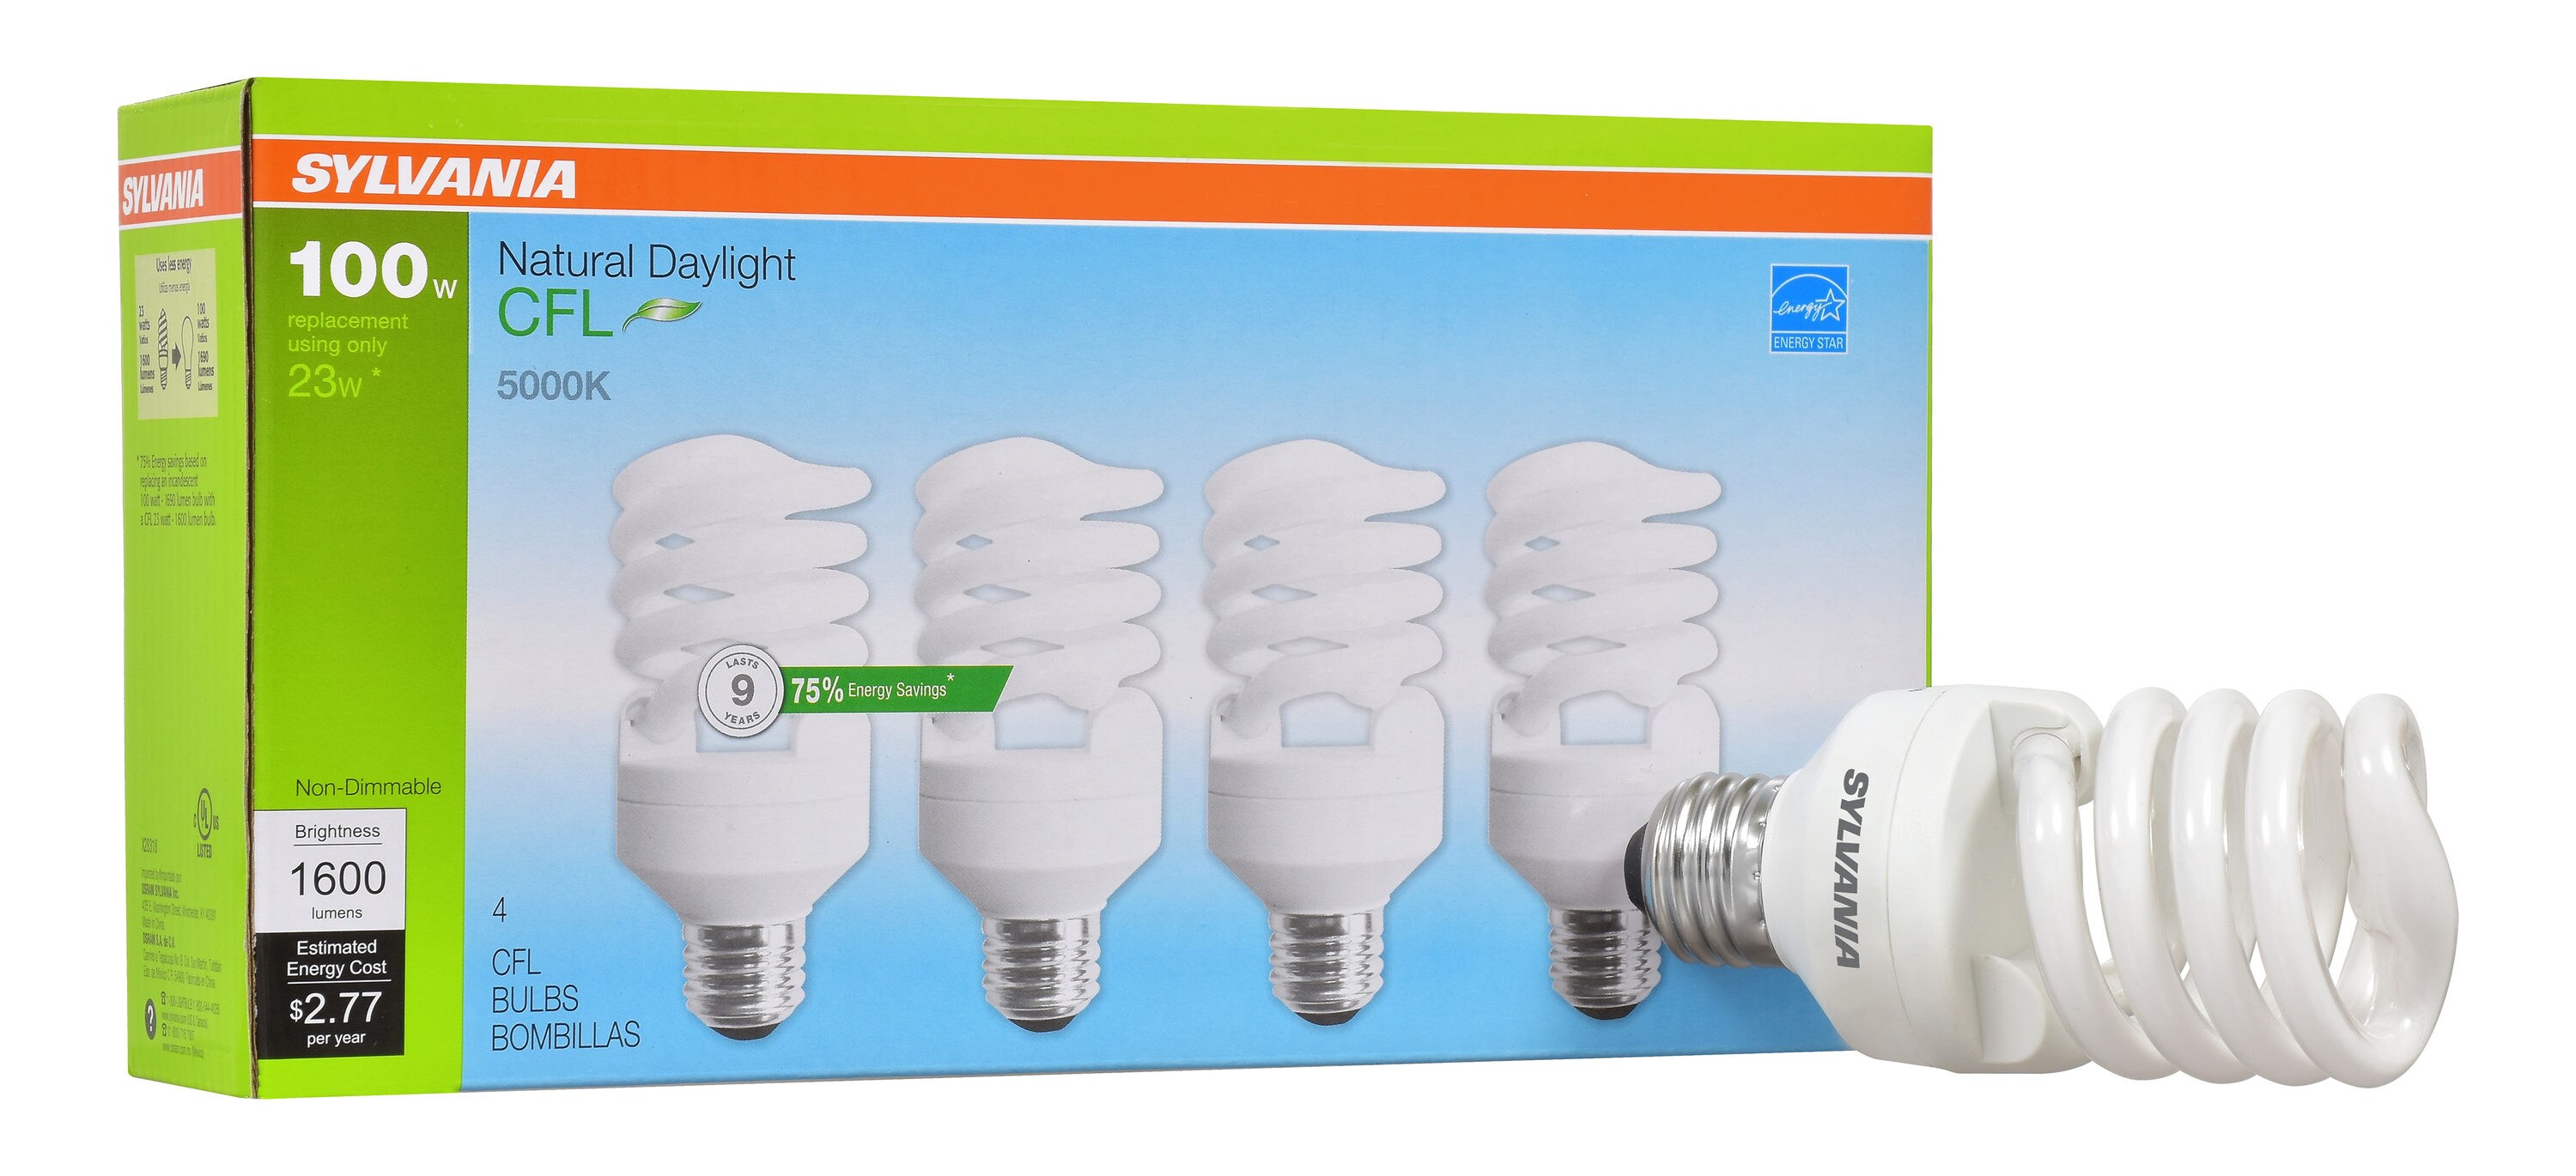 2 PACK 135W 6500K Natural Sunlight Light Bulb/s Grow CFL Growlights 